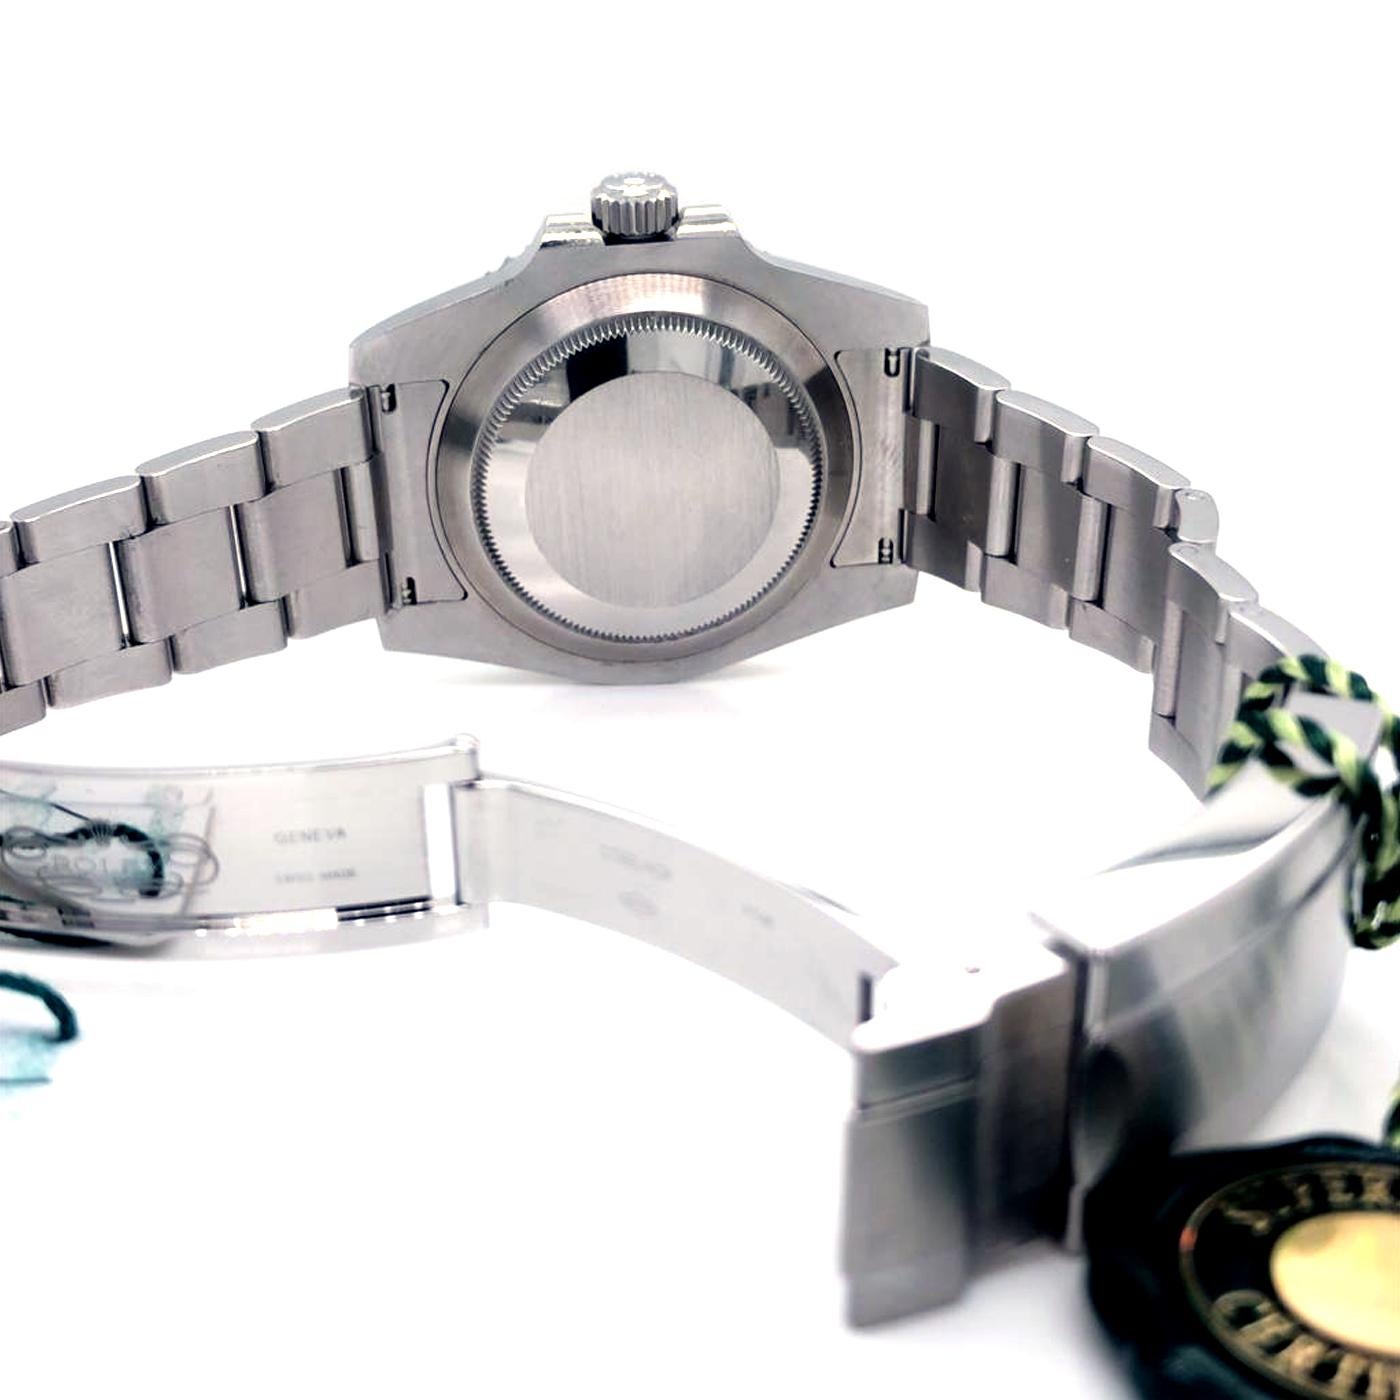 Rolex Submariner Date Hulk Auto Steel Men's Oyster Bracelet Watch 116610LV 2